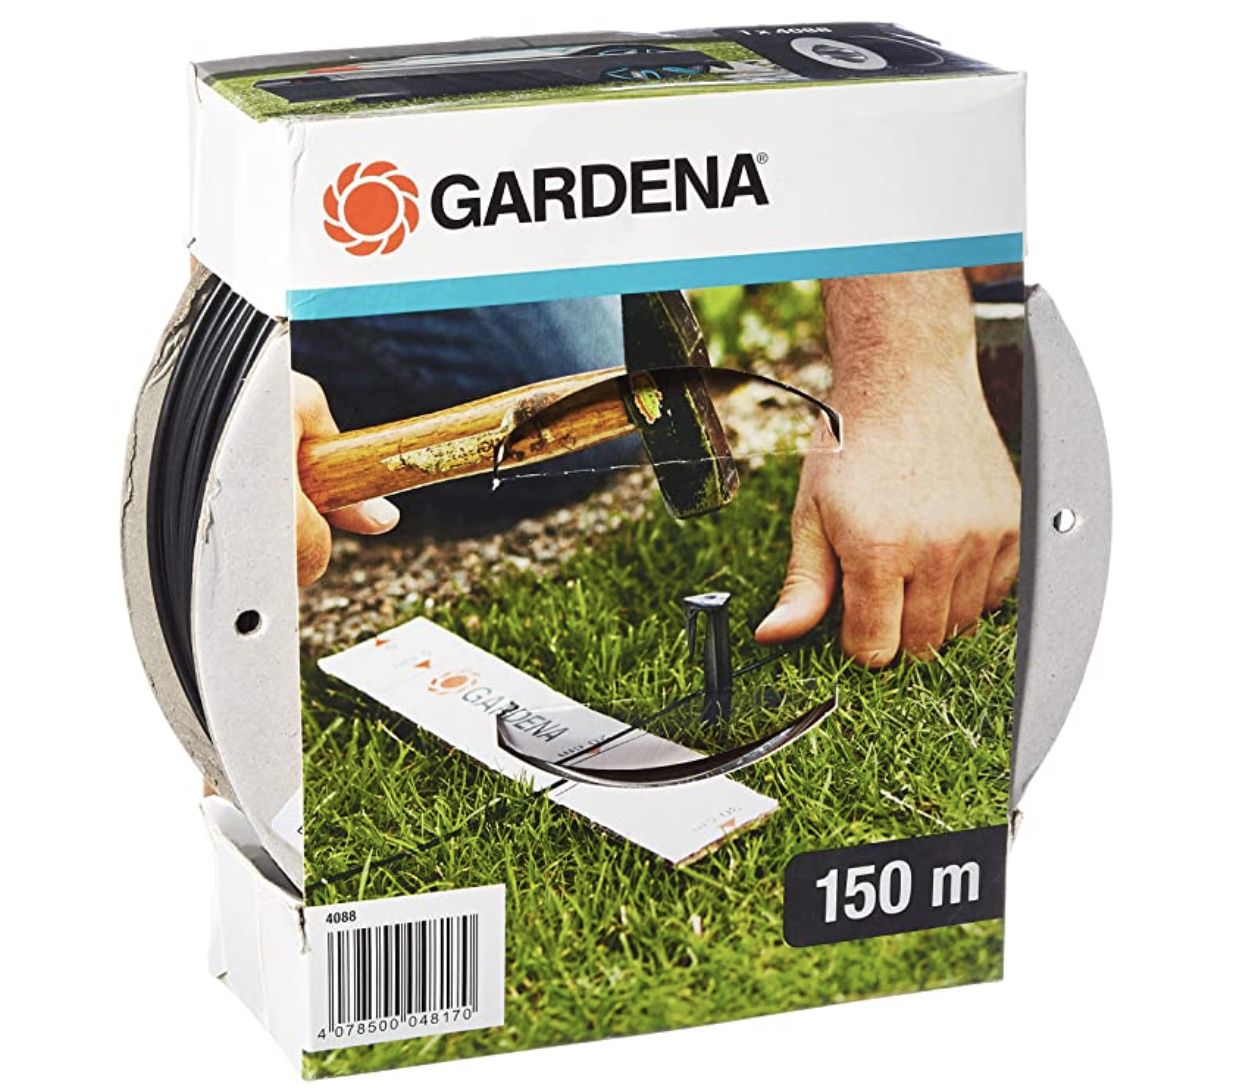 150m Gardena Begrenzungskabel für Gardena Mähroboter für 30,87€ (statt 52€)